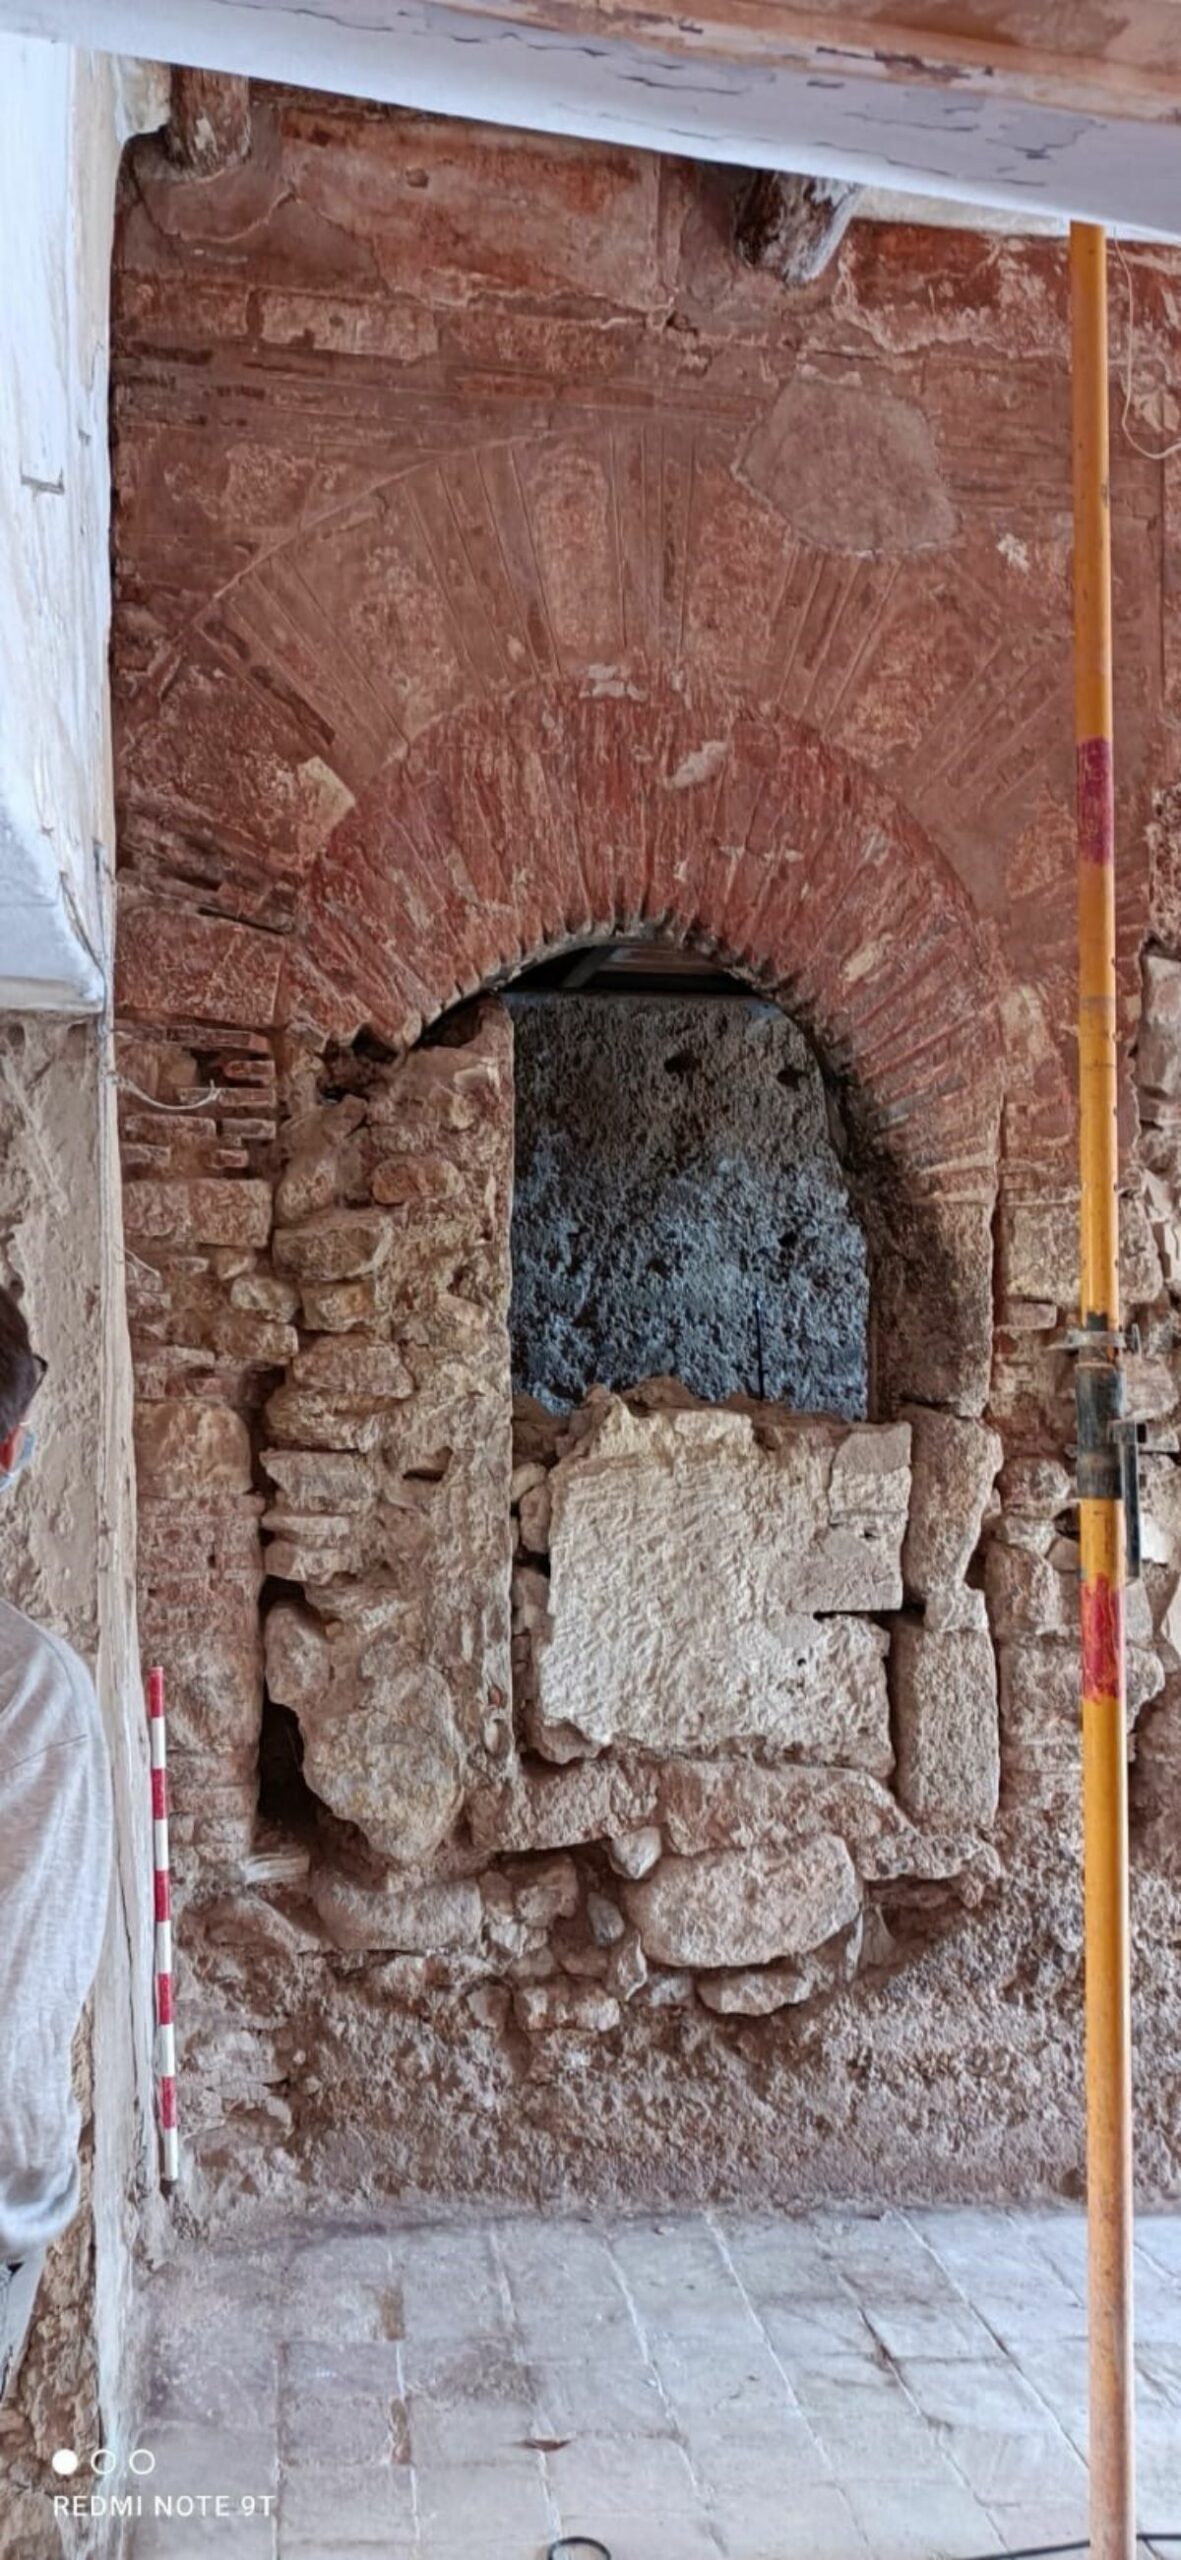 Las excavaciones arqueológicas en el castillo de Isso dejan al descubierto la puerta monumental de entrada a la fotaleza